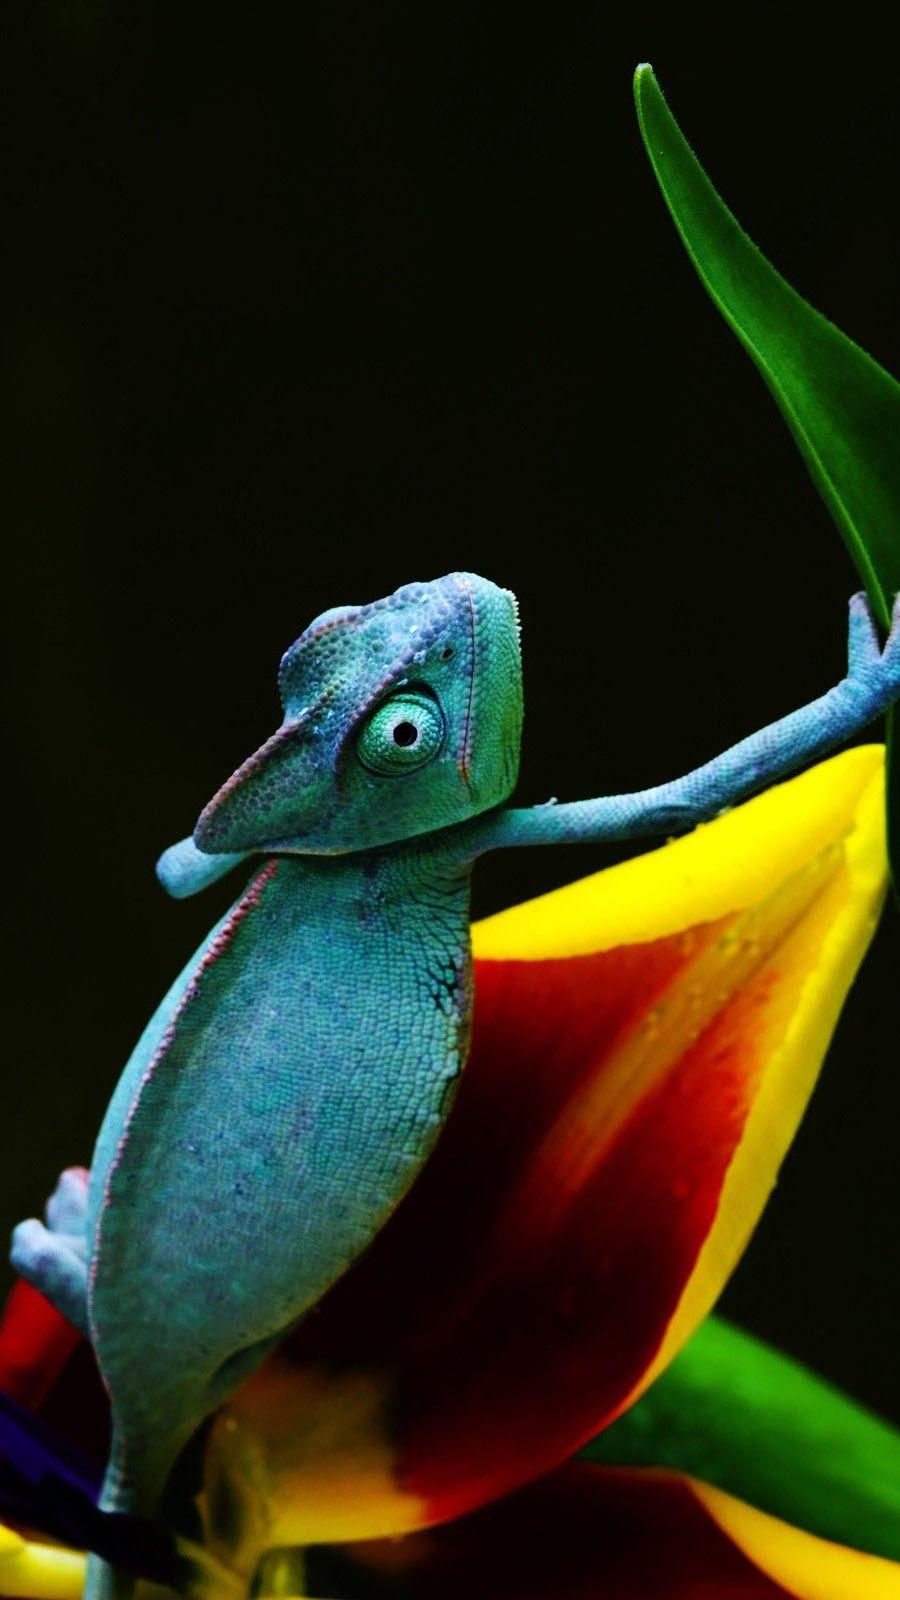 Cool Blue Chameleon Wallpaper iPhone. Chameleon, Wallpaper